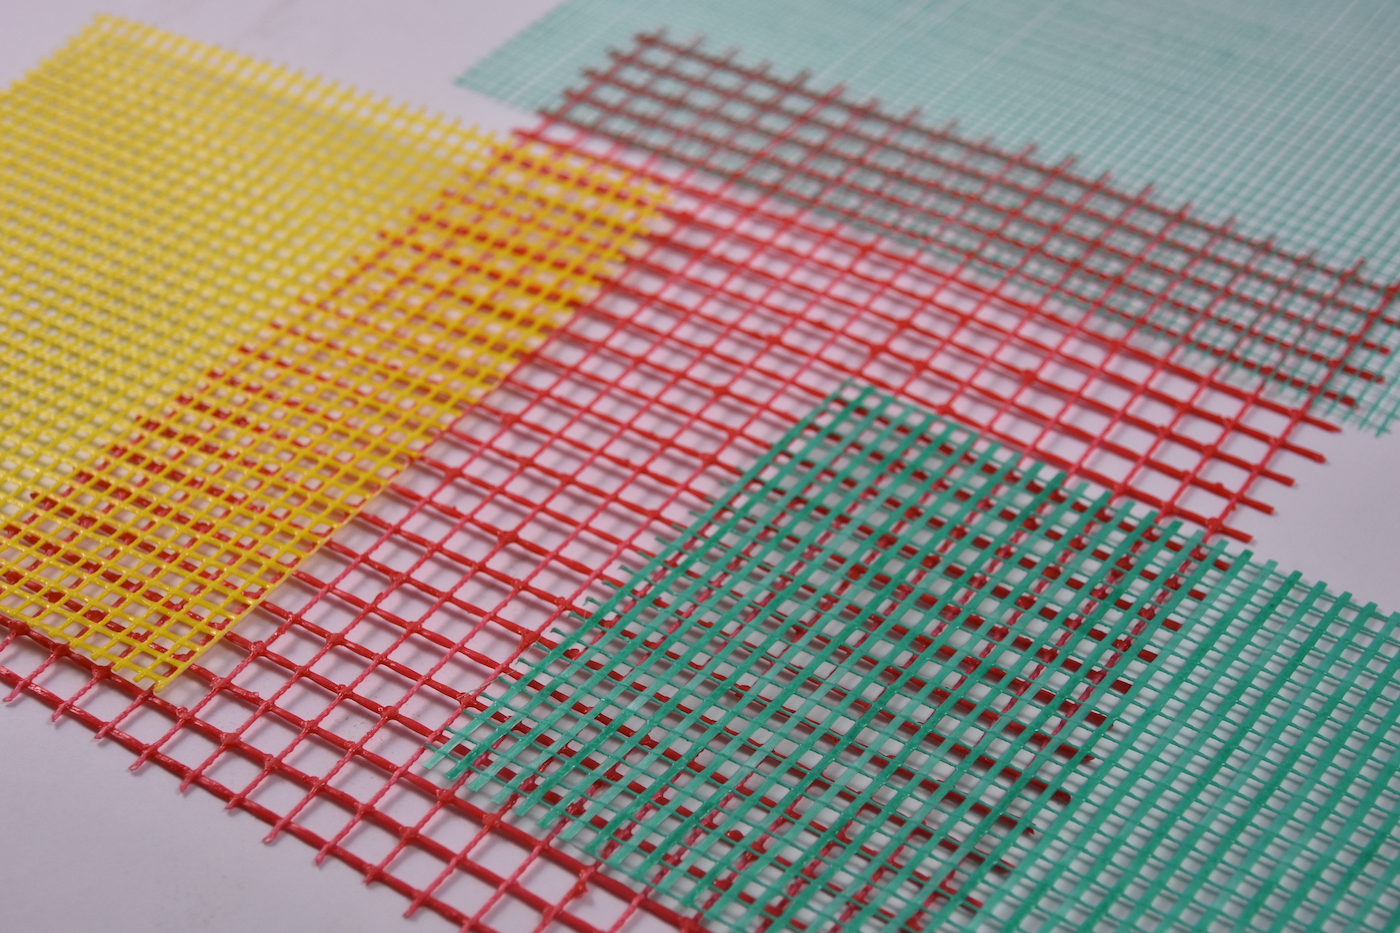 Warp knitted plaster grid. © Karl Mayer